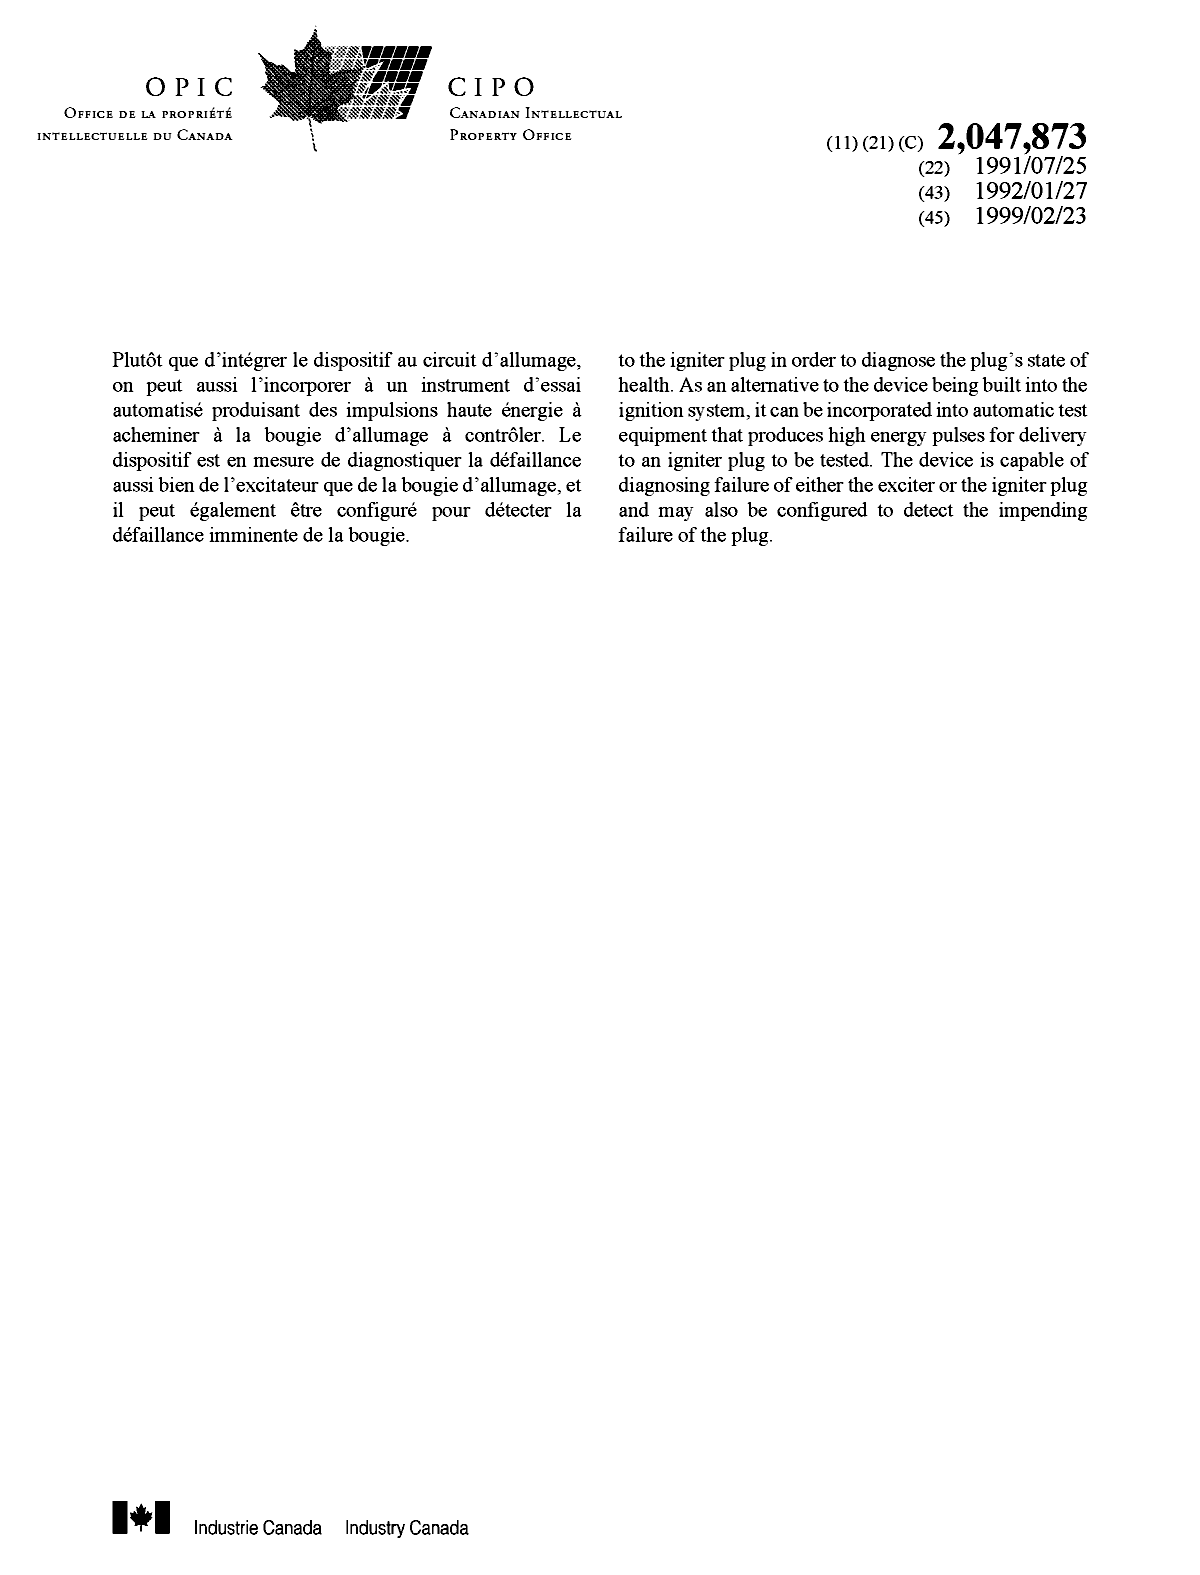 Document de brevet canadien 2047873. Page couverture 19981212. Image 2 de 2